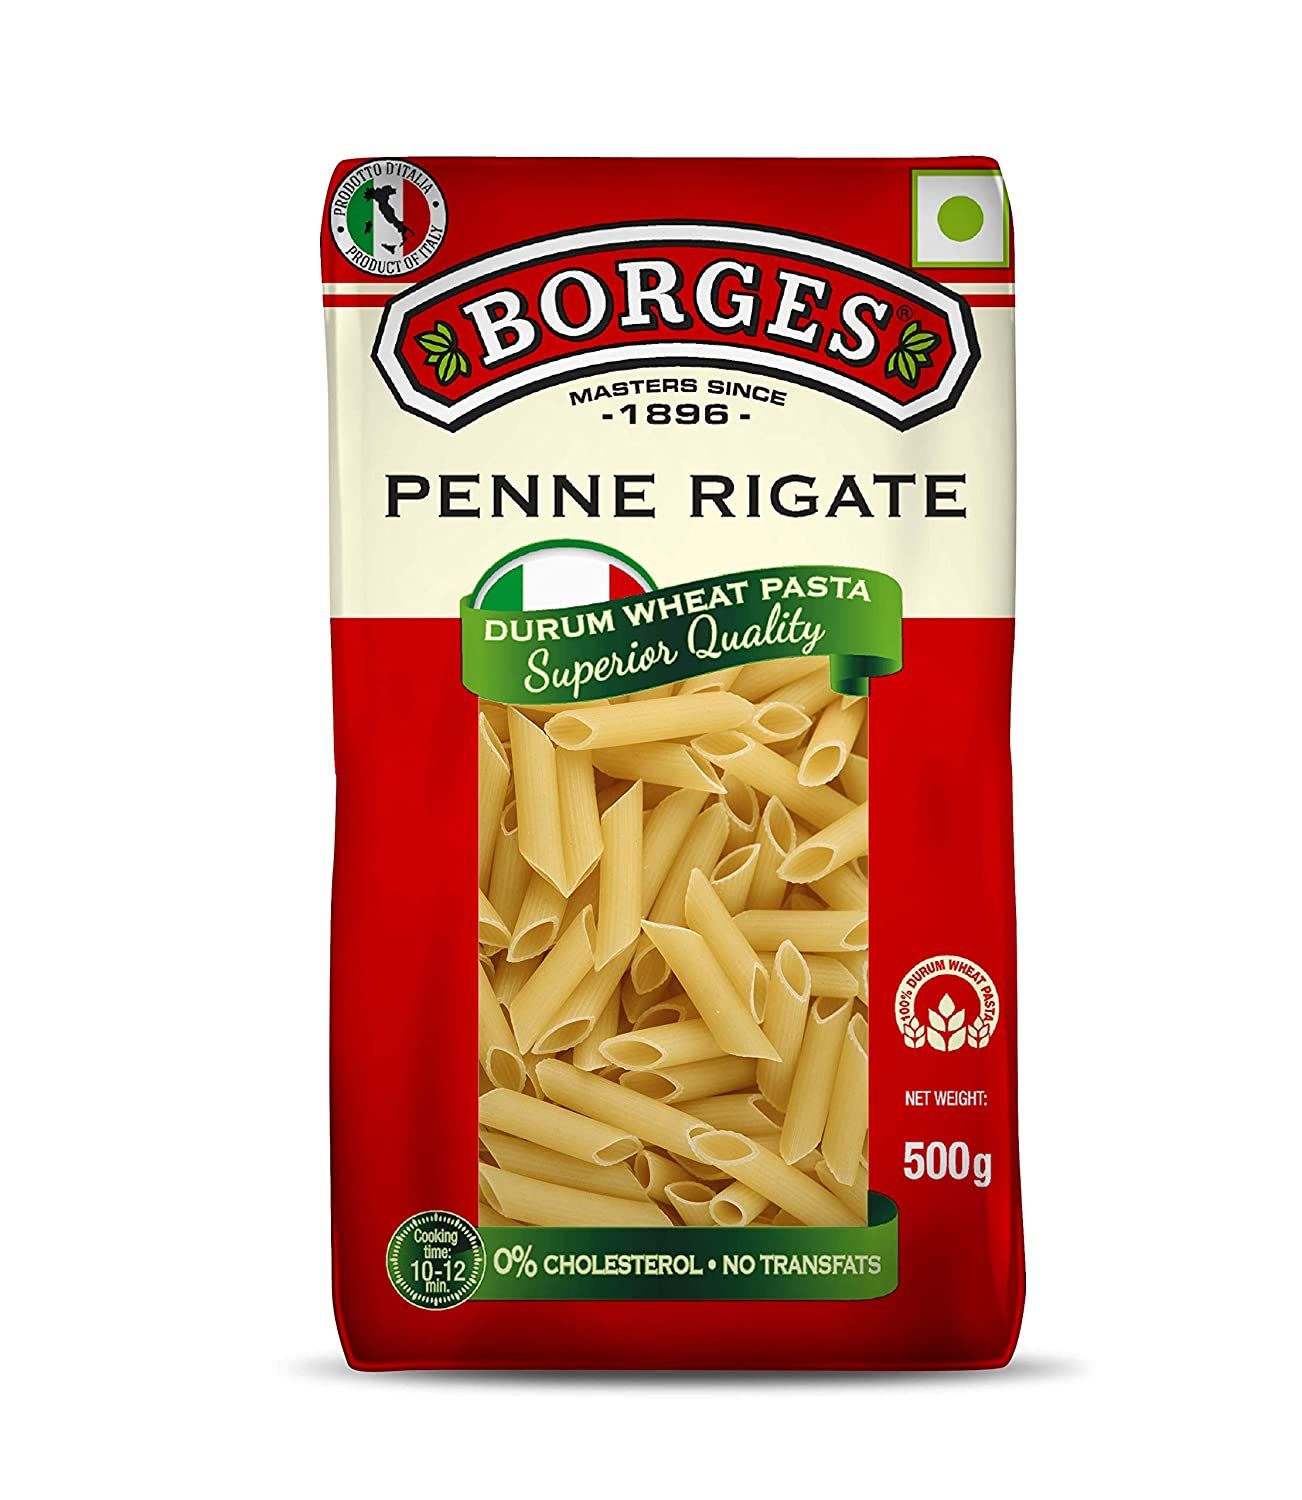 Borges Penne Rigate Durum Wheat Pasta Image